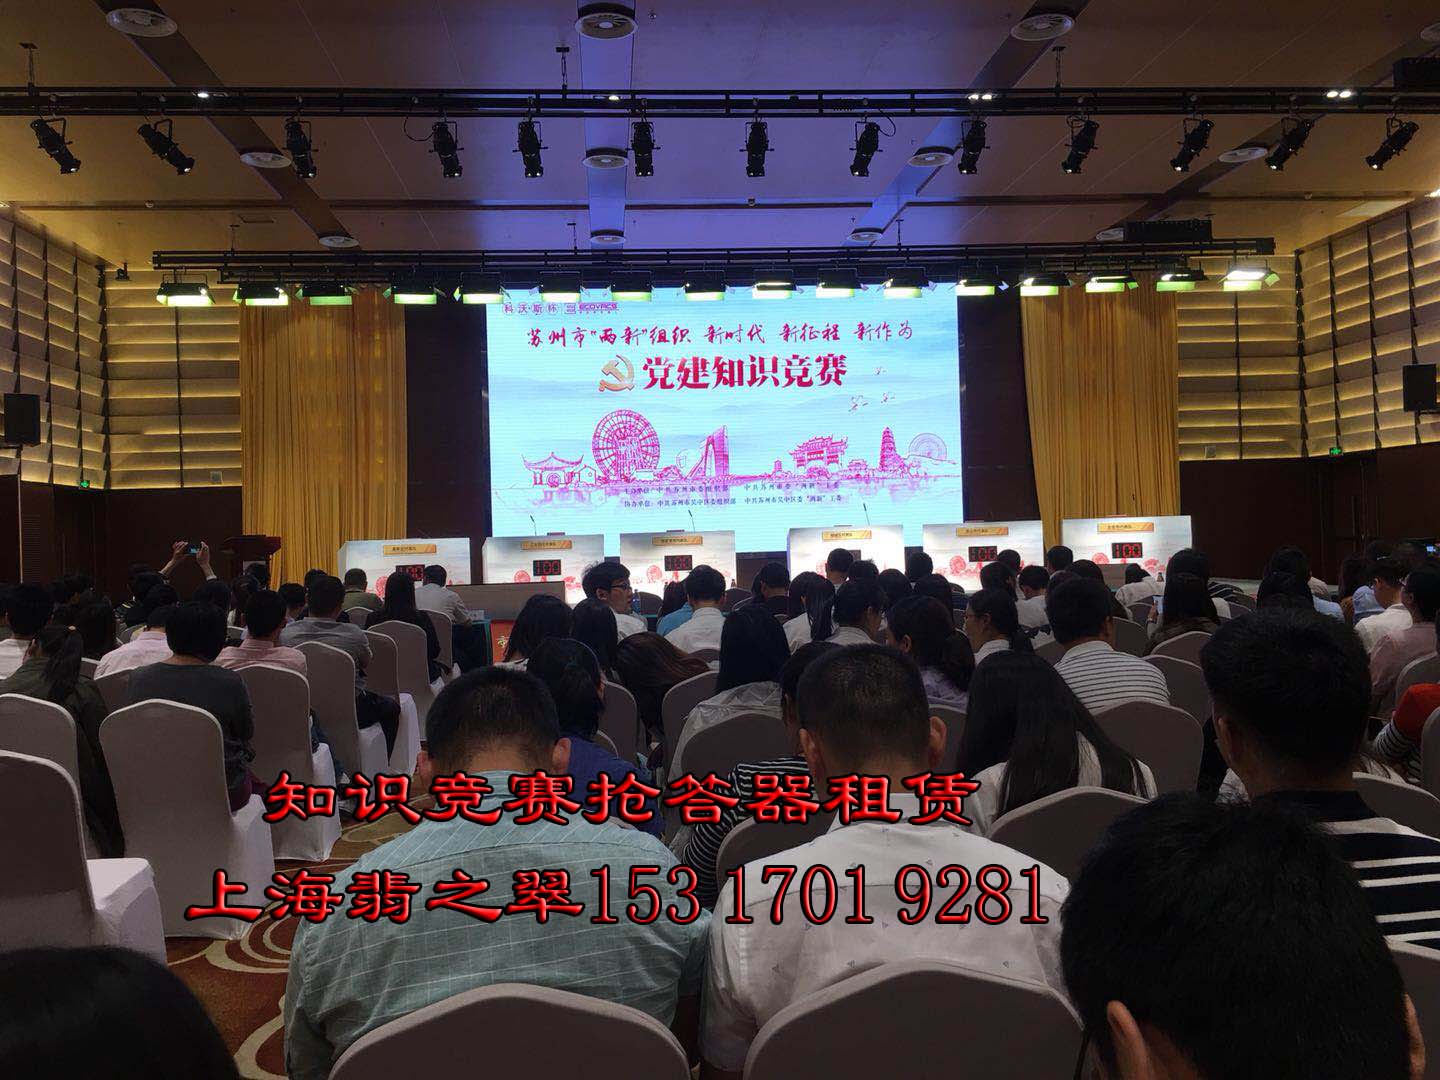 （上海）投票器评分器，抢答器，无线导览活动竞赛专业抢答器，设备租赁找翡之翠。